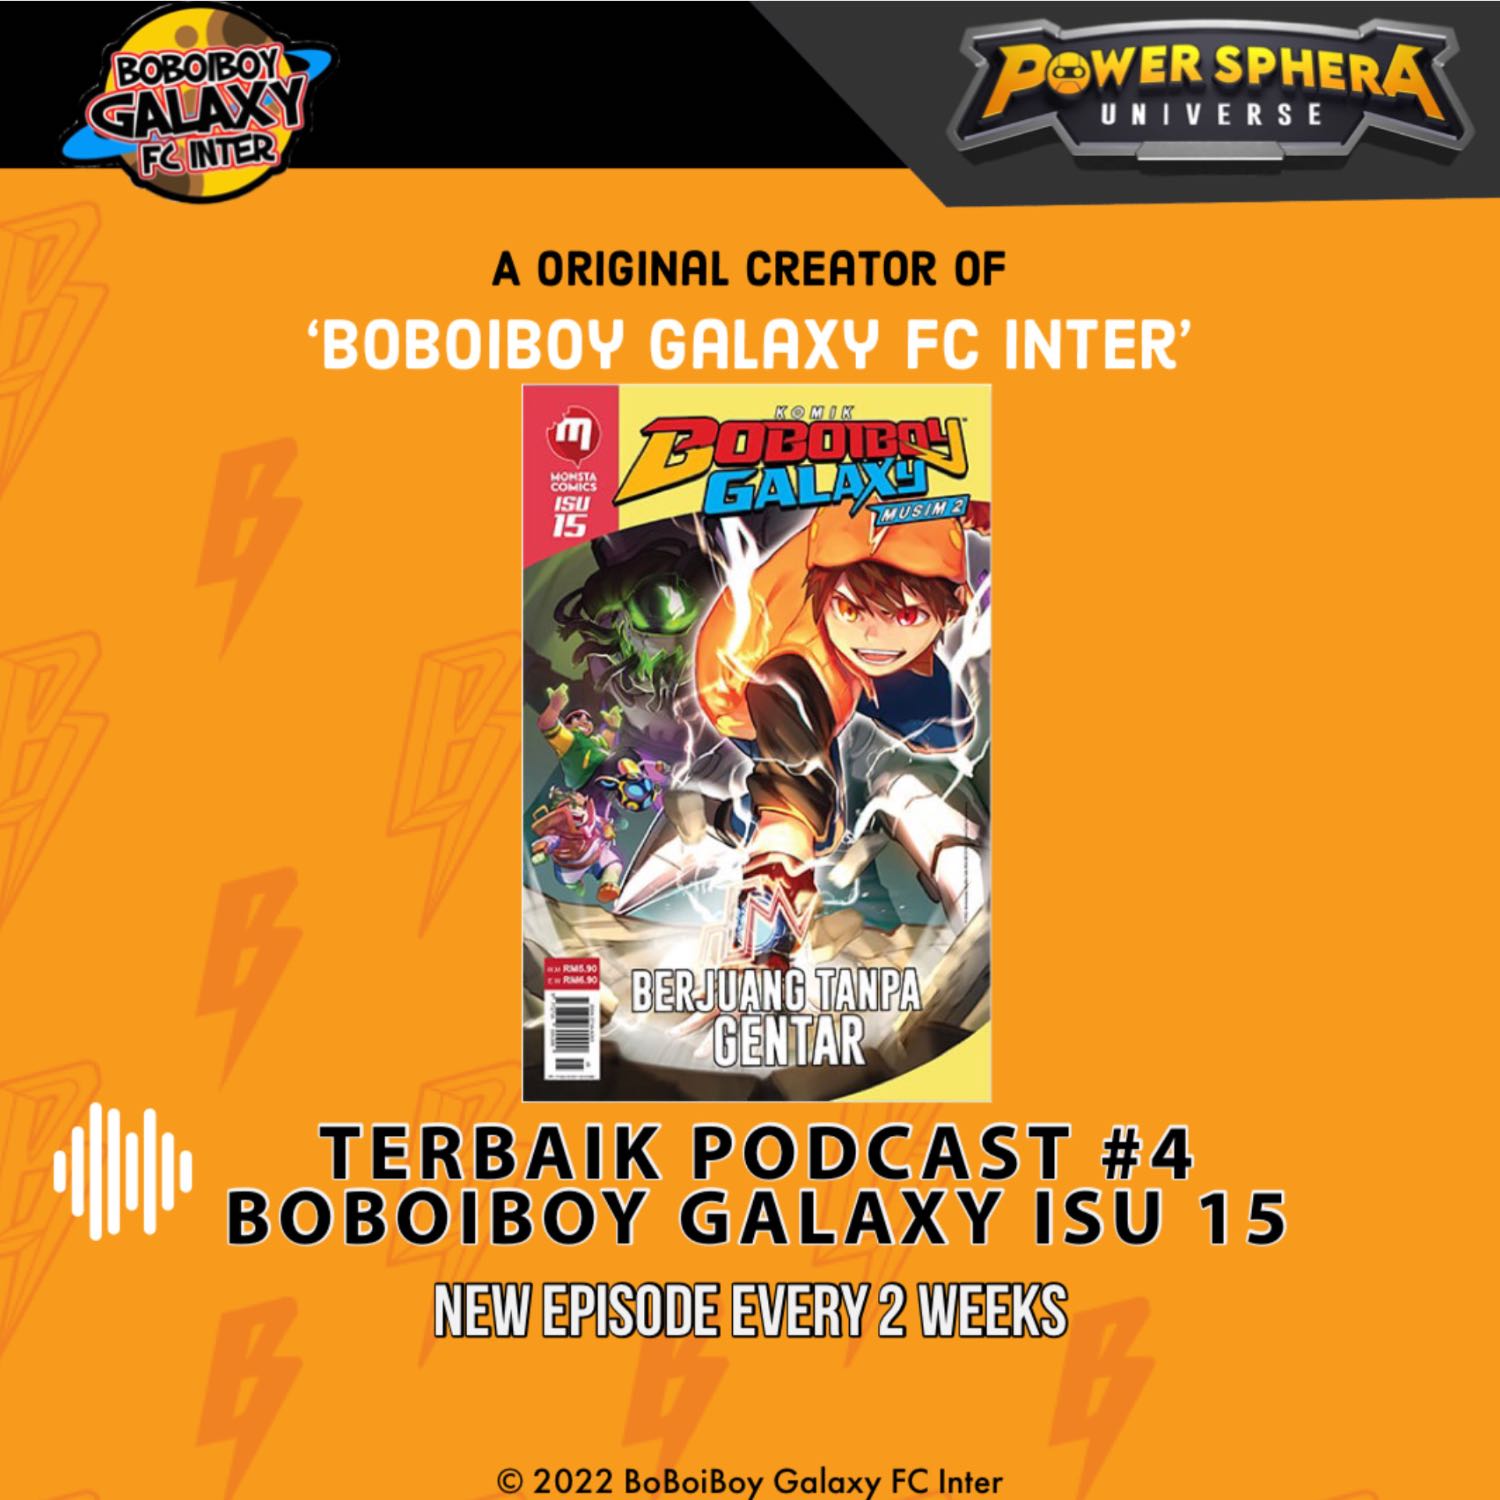 Terbaik Podcast #4 - BoBoiBoy Galaxy Season 2 Issue 15 Spoiler